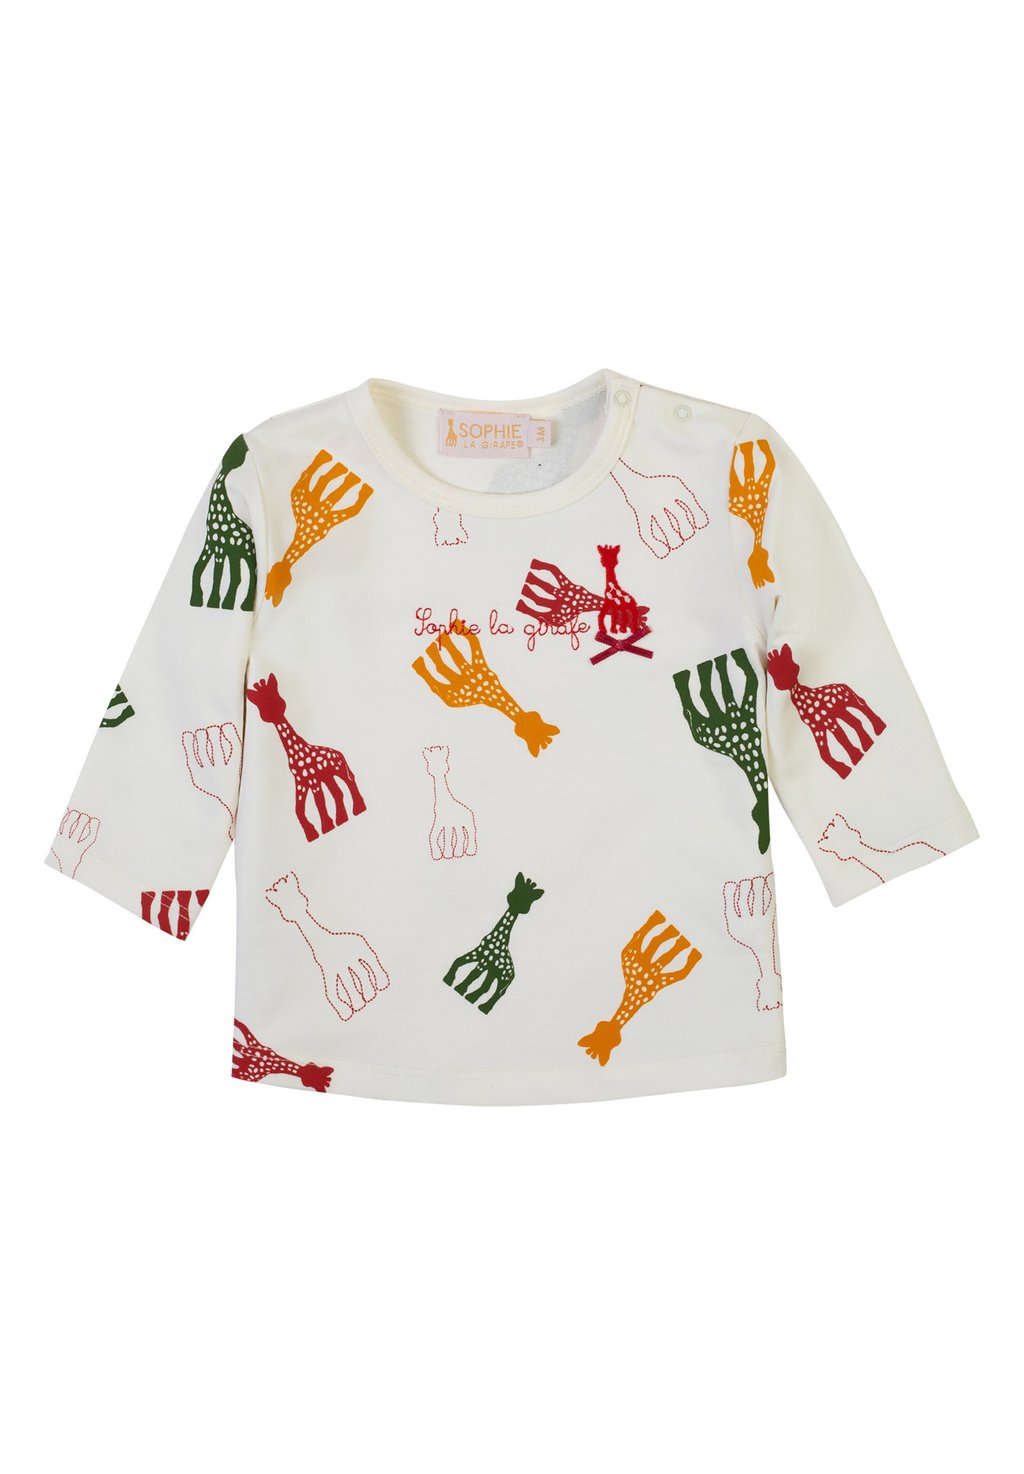 Рубашка с длинным рукавом Sophie la Girafe, цвет snow white